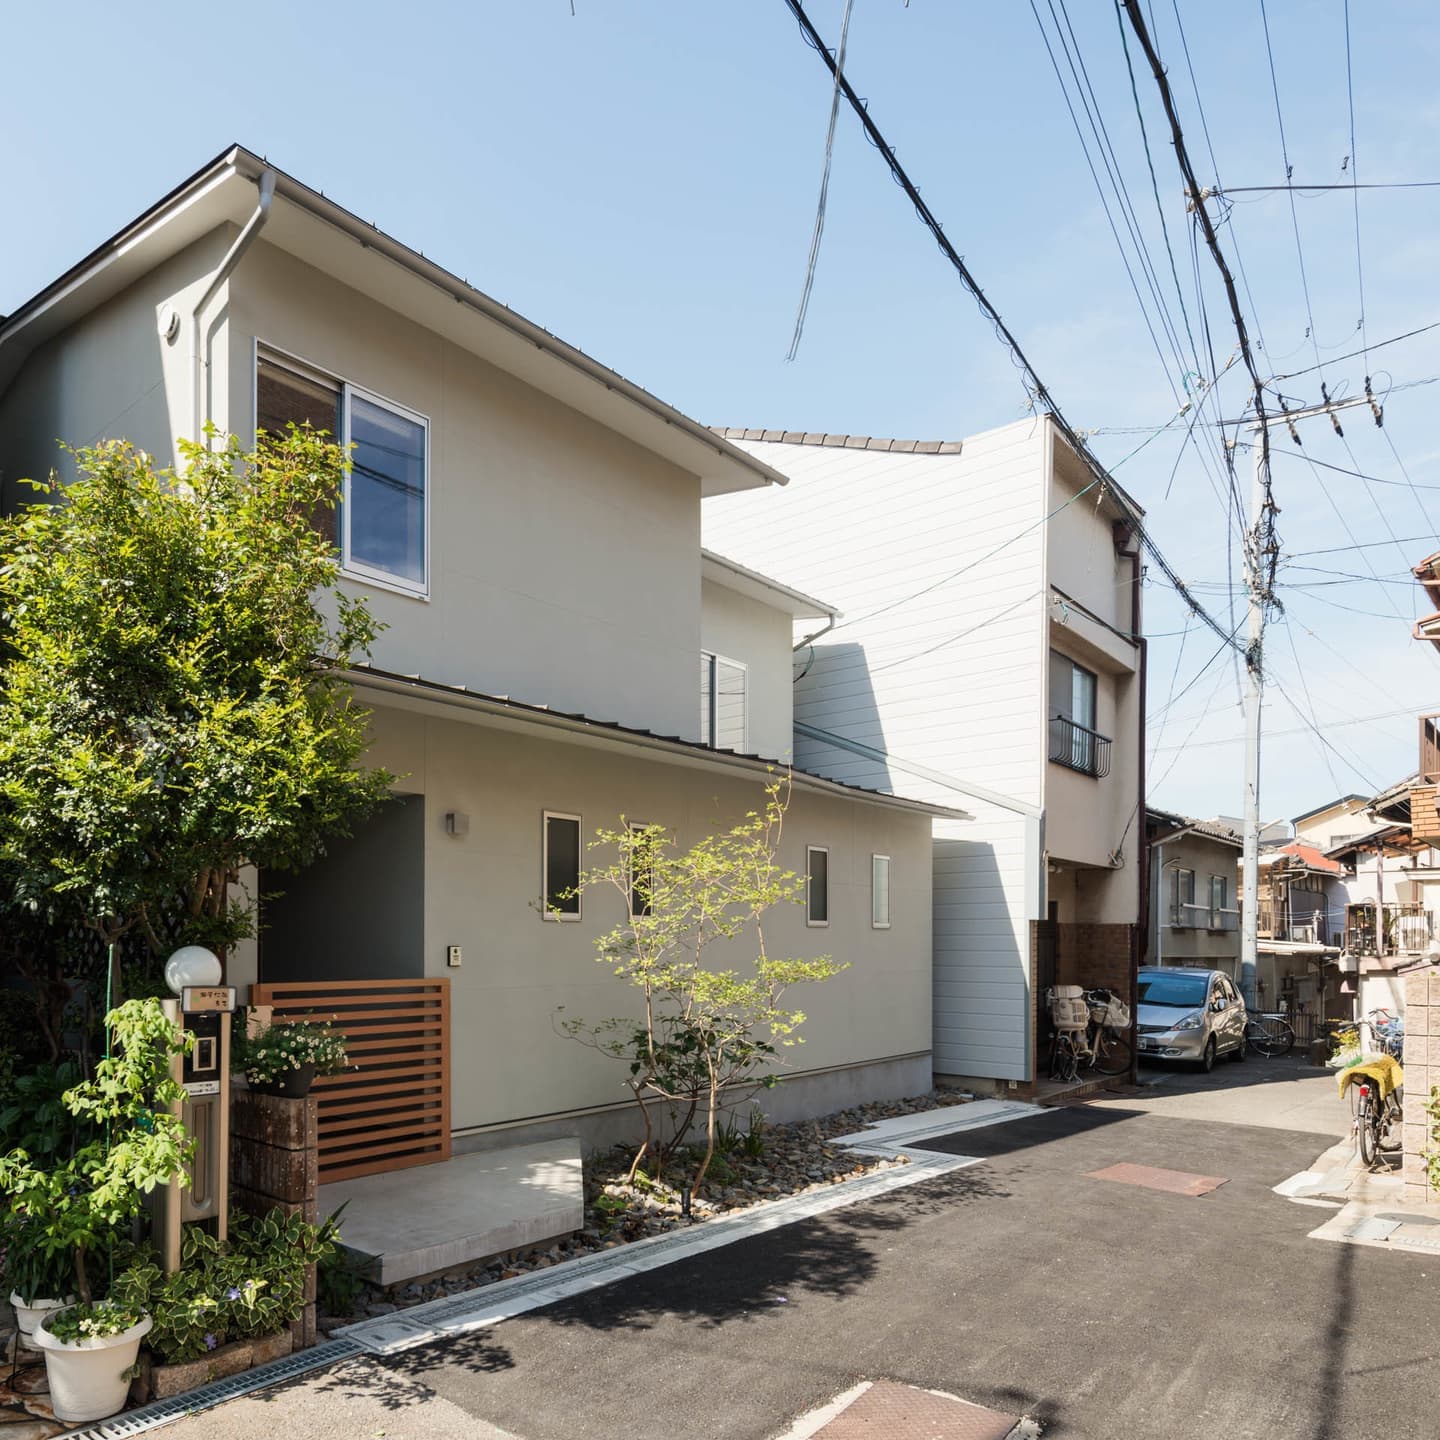 大阪の建築家・中平勝が設計した住宅密集地に建つ庭付き木造住宅です